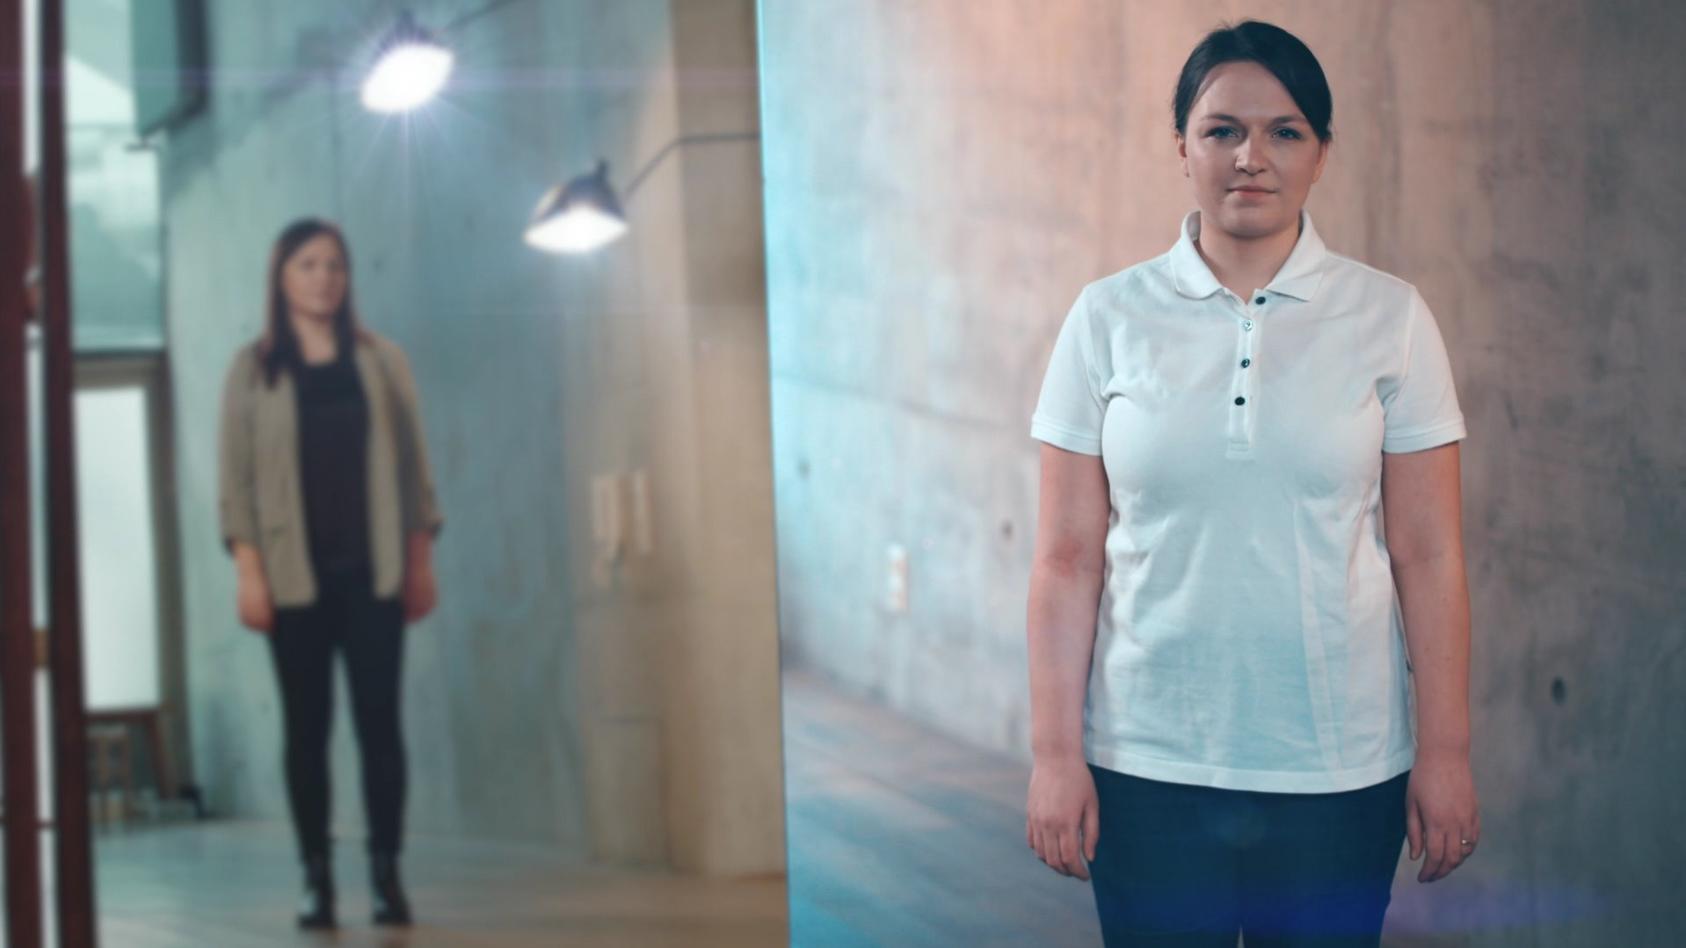 Journalistin Judith ist links im Spiegelbild zu sehen, während rechts Pflegepraktikantin Judith in einem weißen Poloshirt direkt in die Kamera blickt.